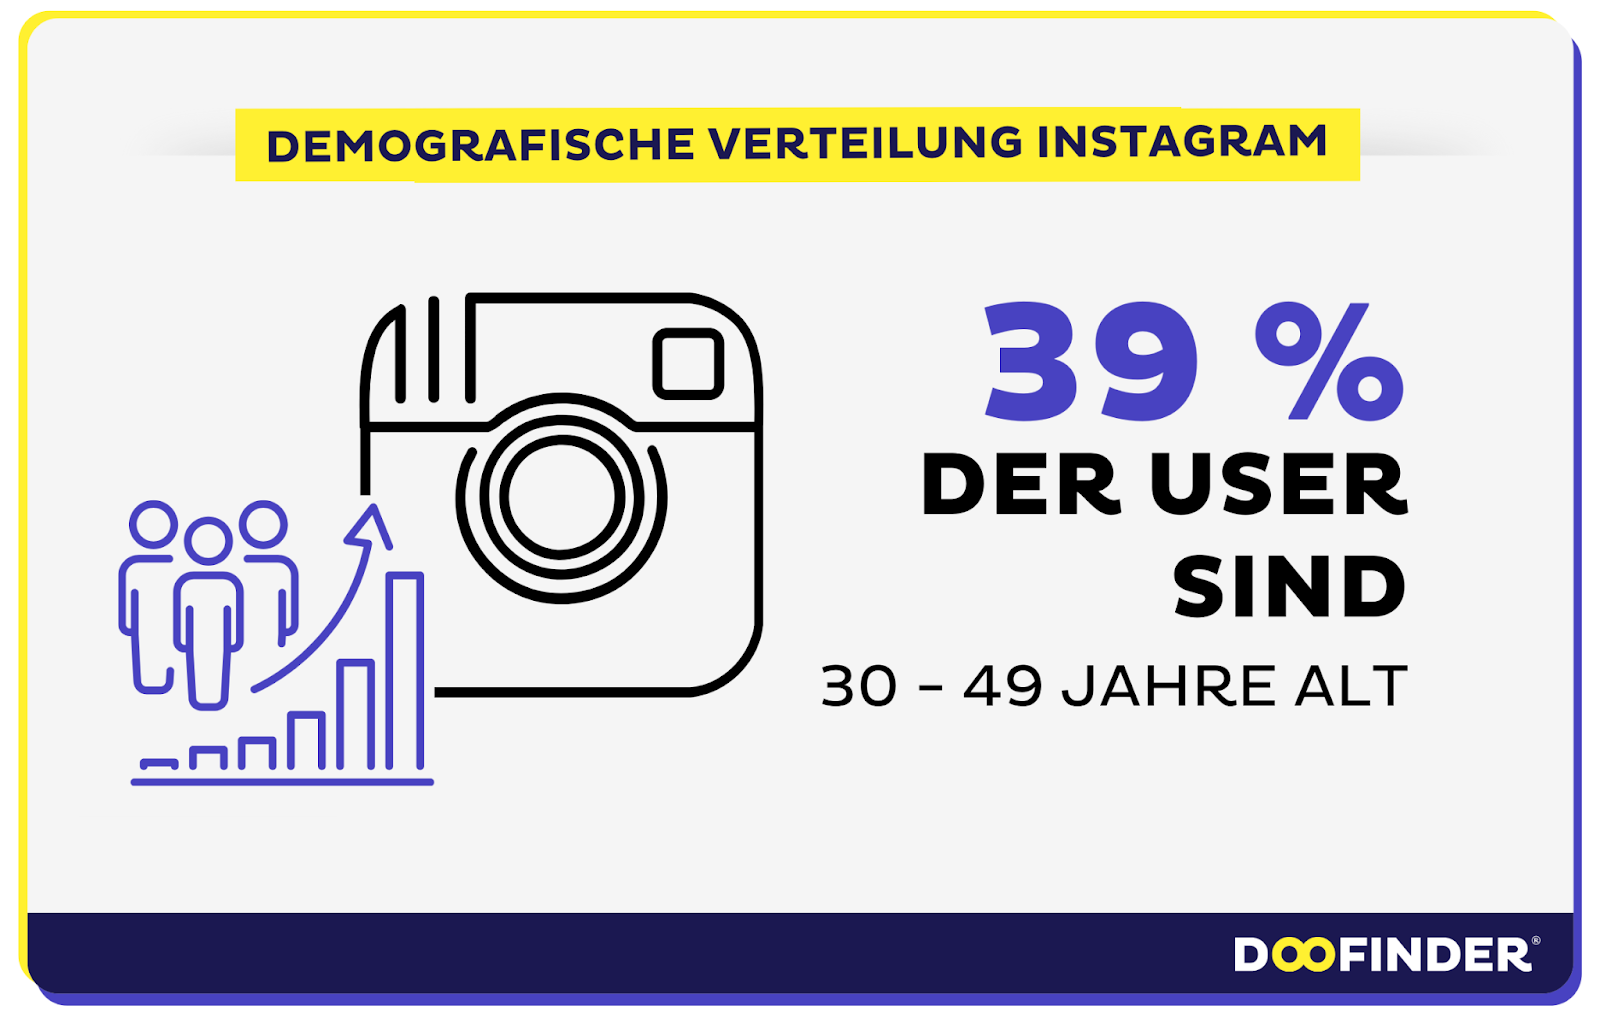 Die Demografie der globalen und deutschen Instagram-Nutzer:innen